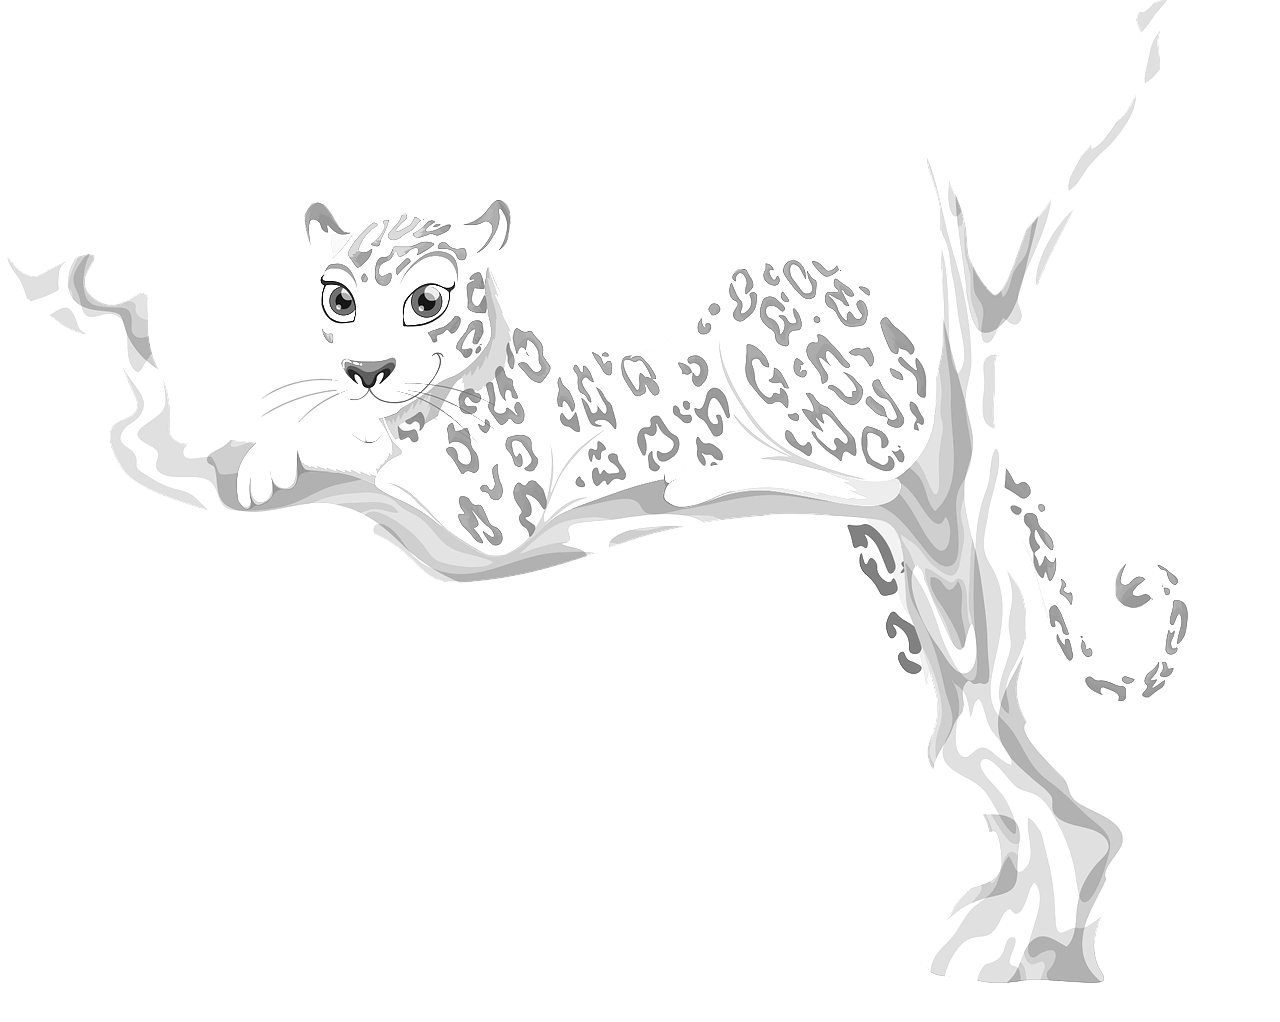 Dibujo para colorear de un leopardo